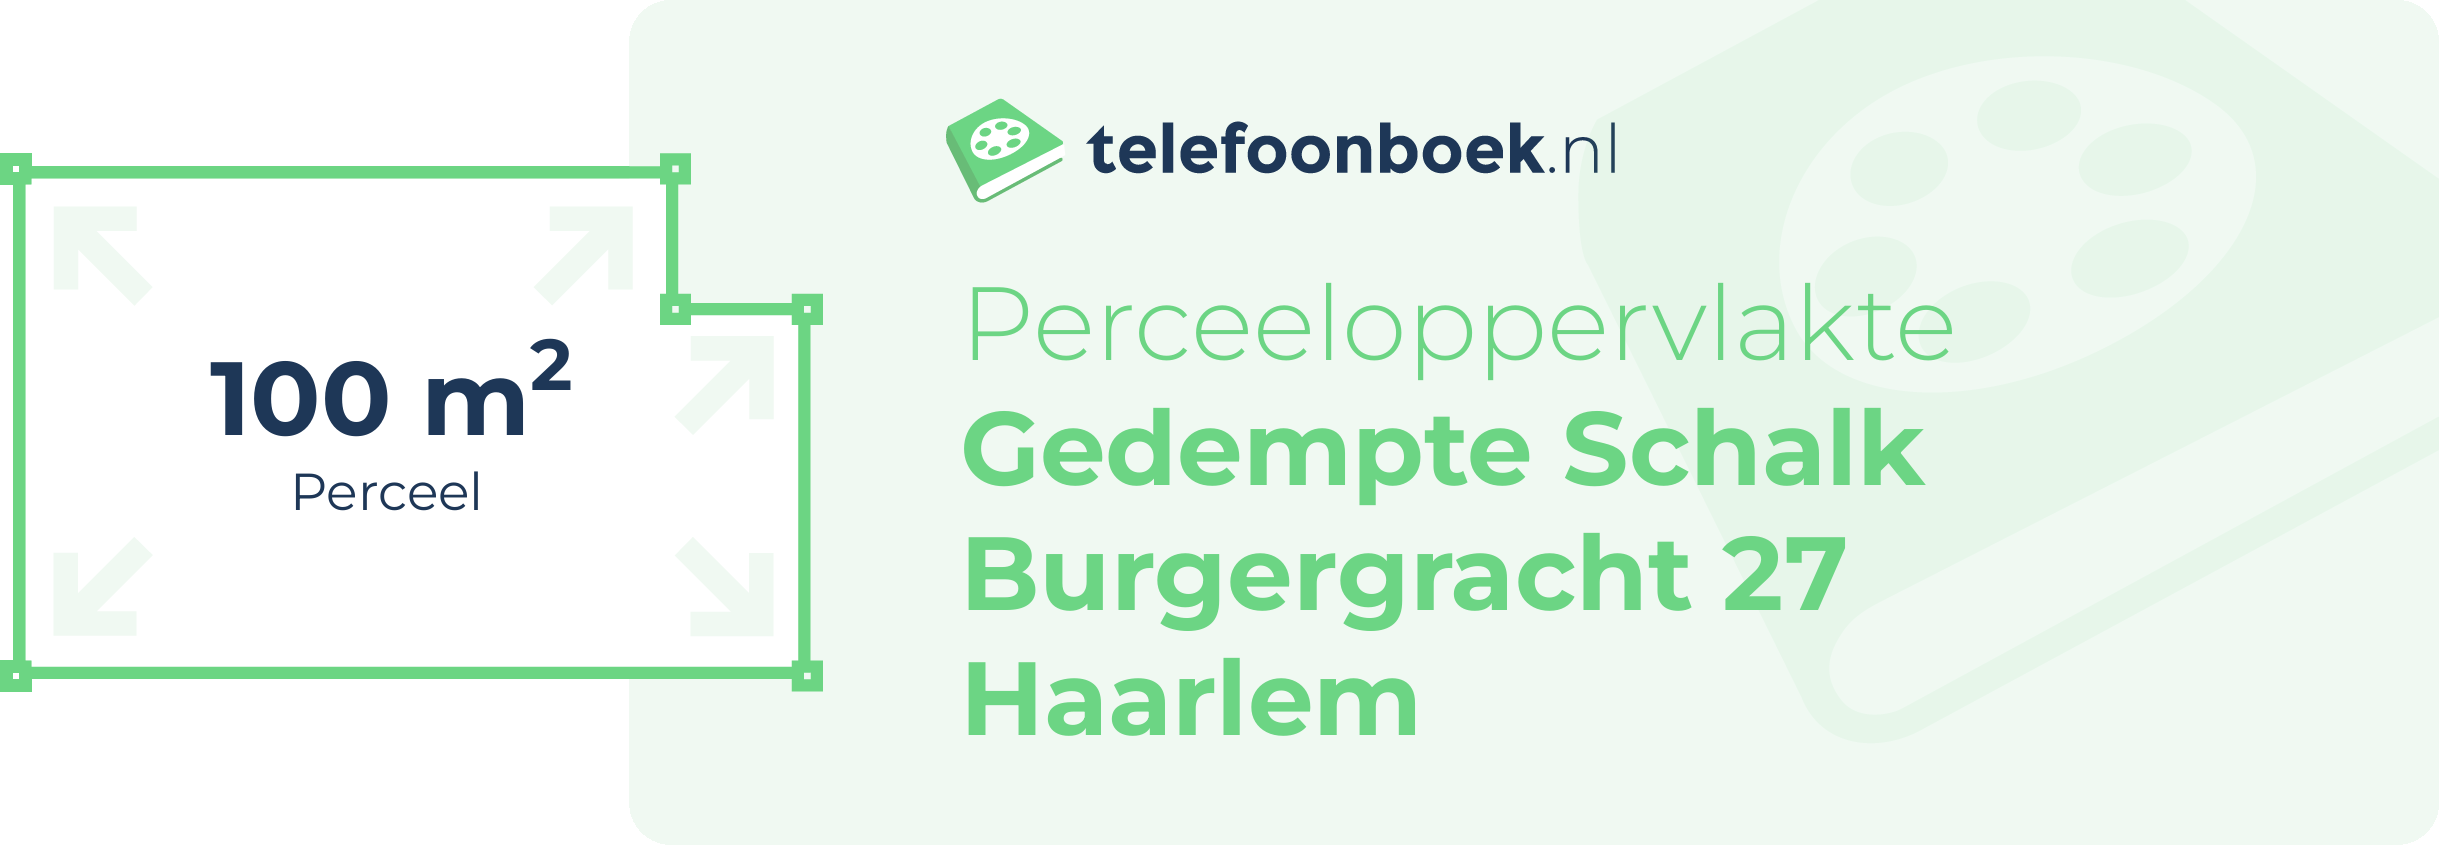 Perceeloppervlakte Gedempte Schalk Burgergracht 27 Haarlem